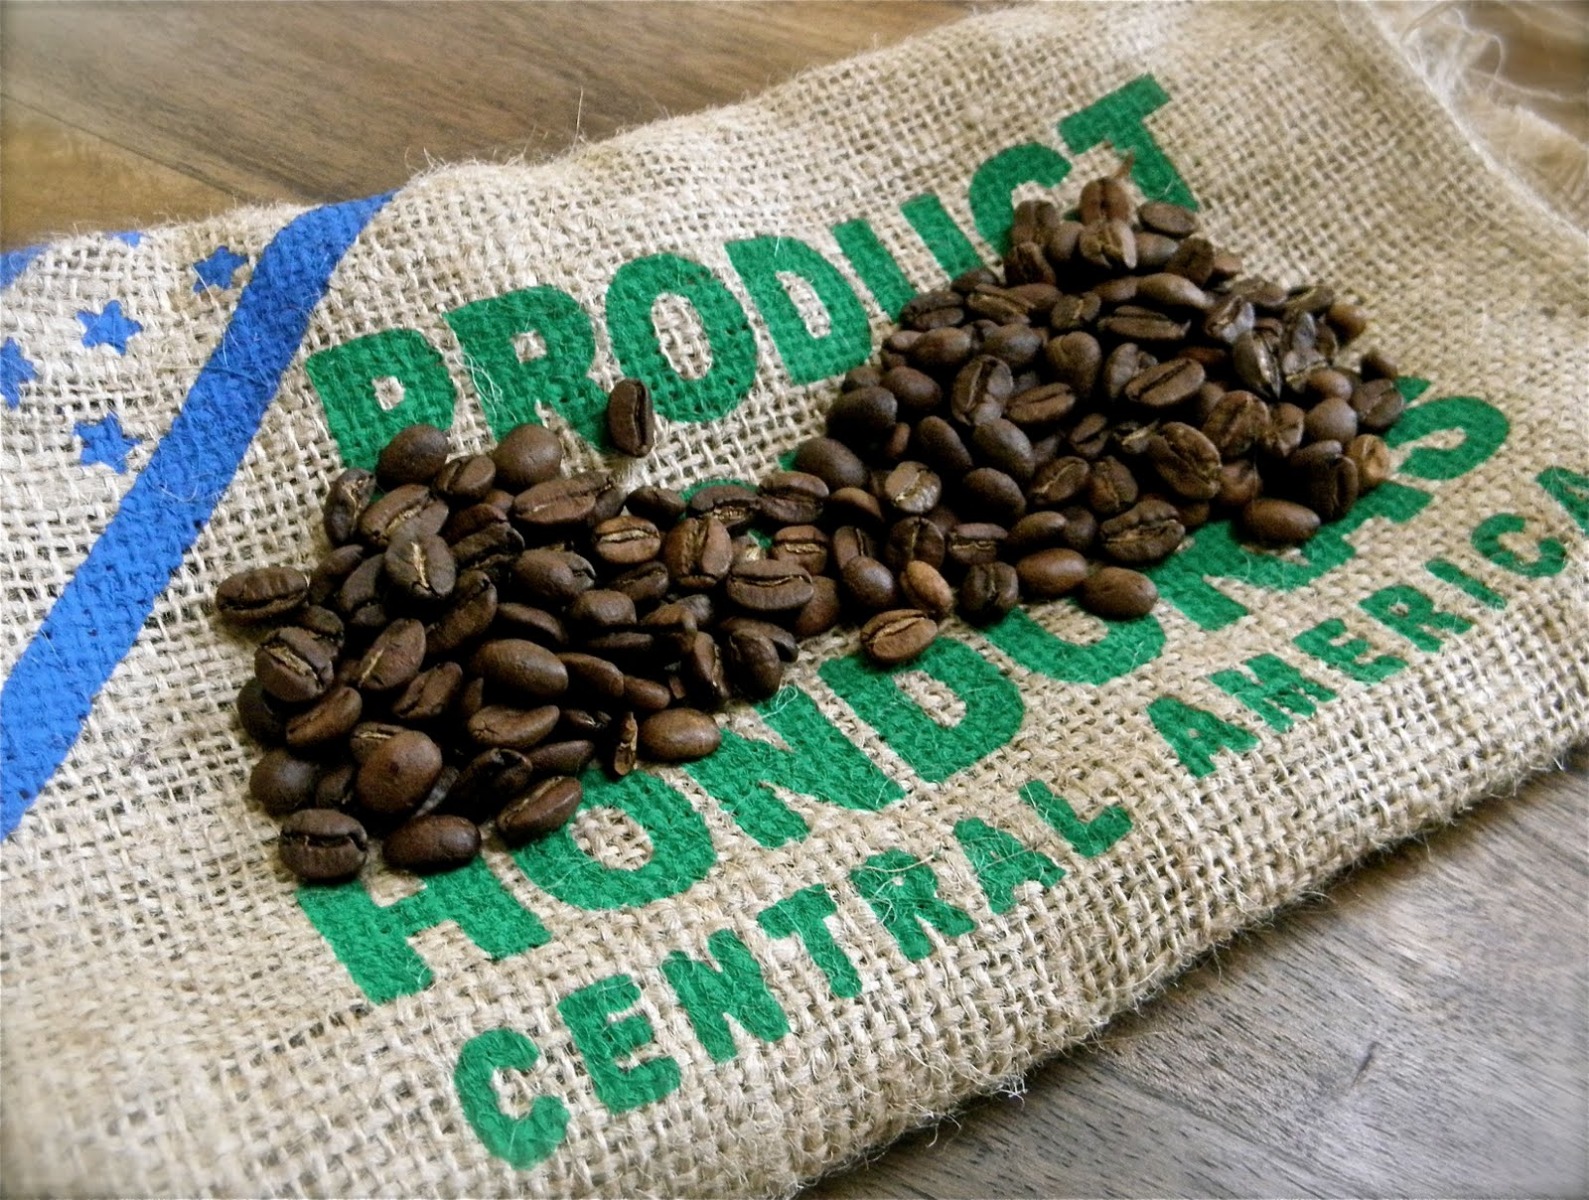 Roasted Coffee Beans - Honduras